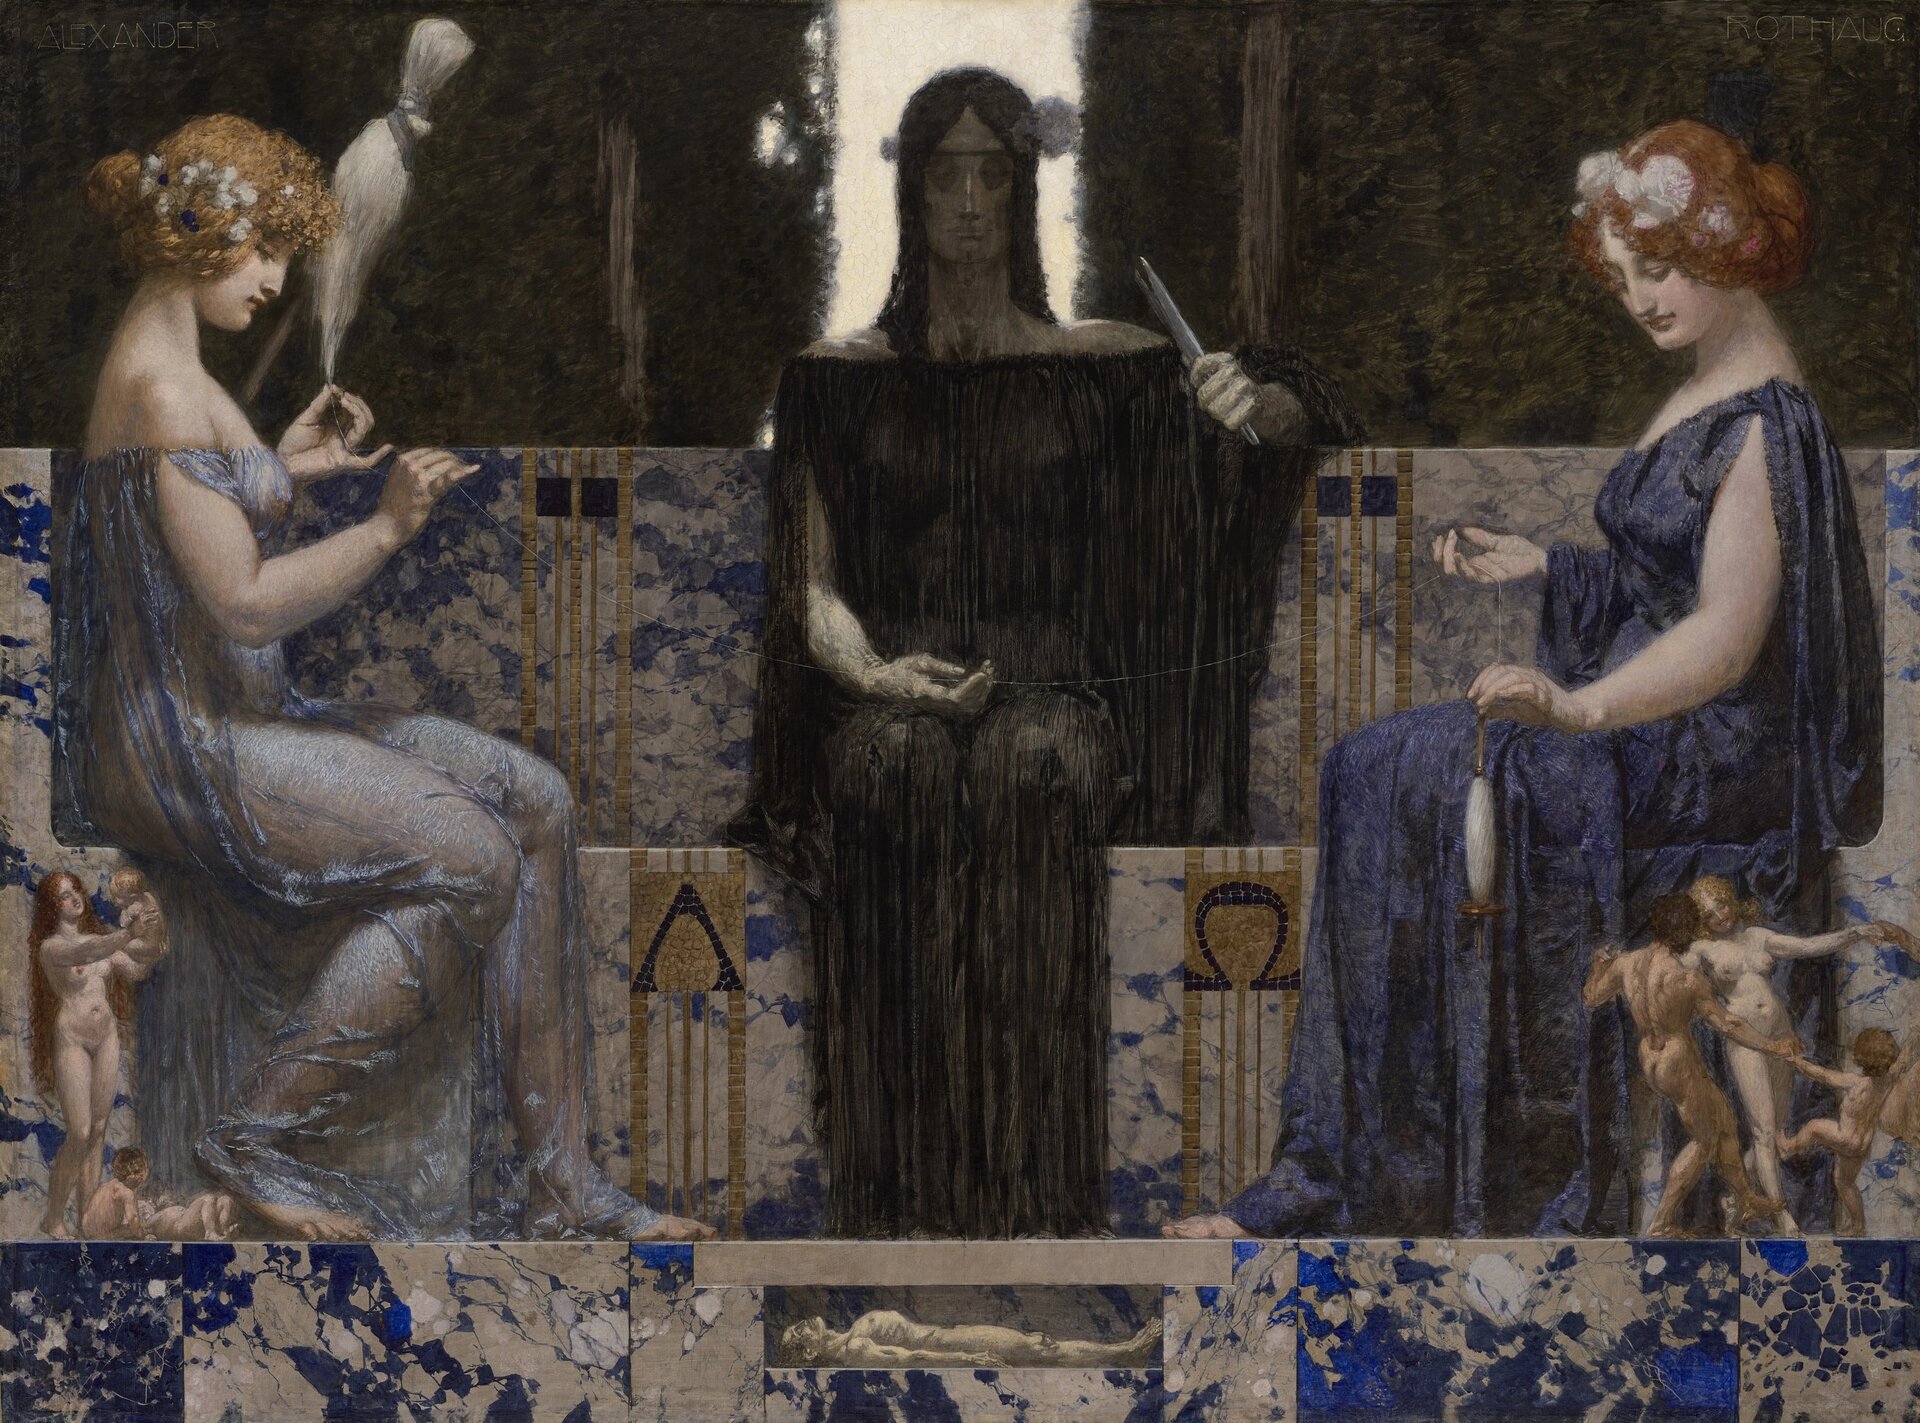 Obraz przedstawia trzy młode kobiety. Są to Mojry. Kobiety siedzą w pobliżu siebie. Każda z nich przędzie nić prowadzącą do postaci człowieka, który leży u stóp bogiń. Postać człowieka jest bardzo mała w porównaniu z olbrzymimi postaciami kobiet.